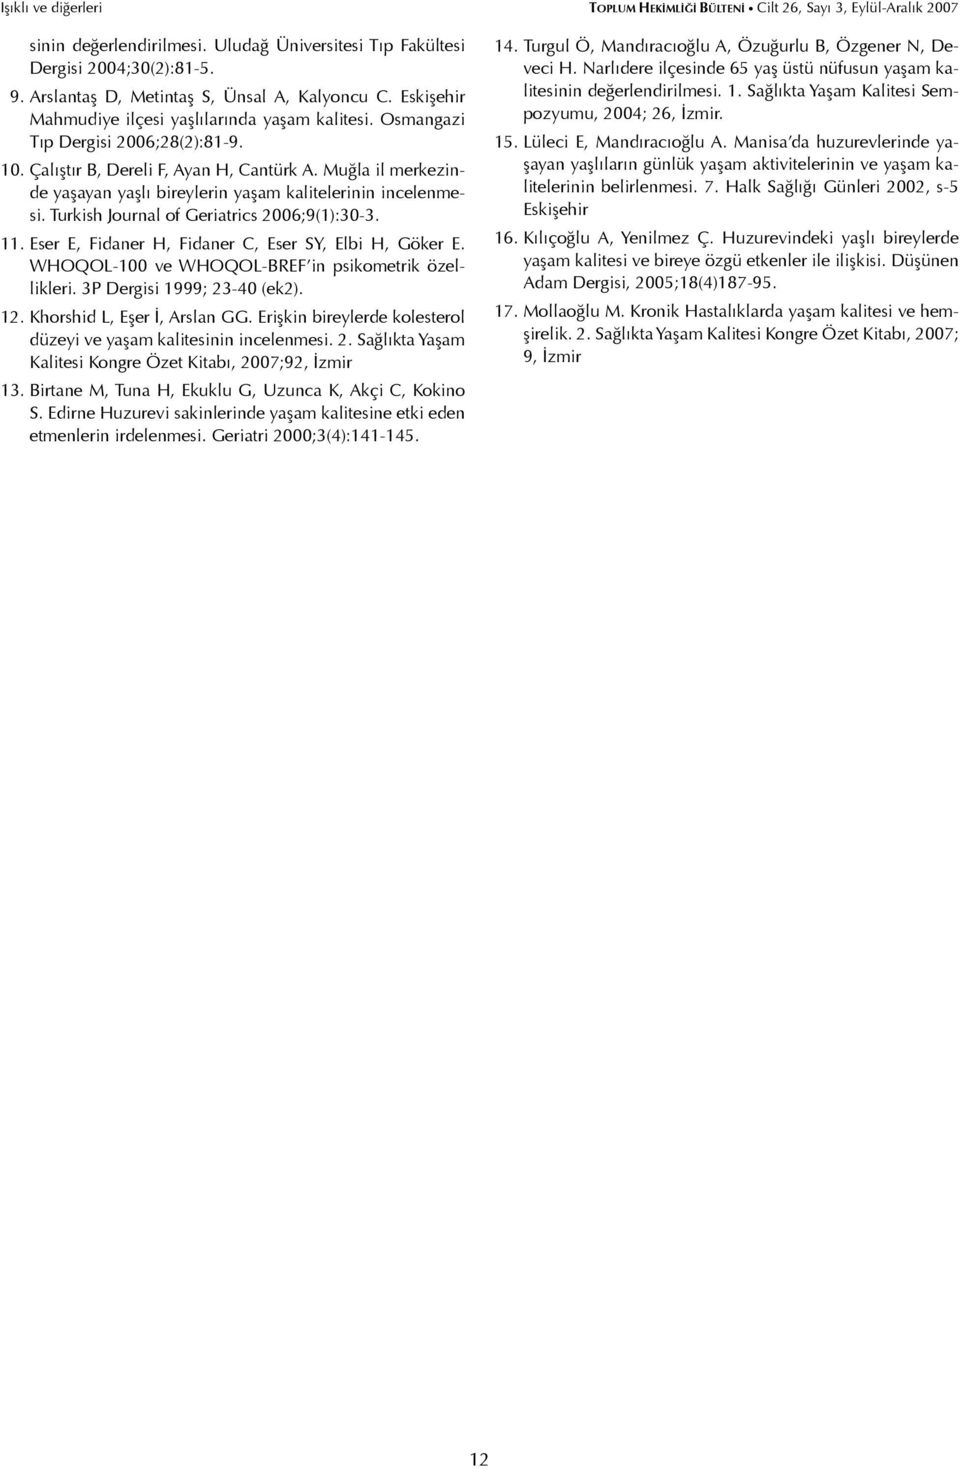 Muğla il merkezinde yaşayan yaşlı bireylerin yaşam kalitelerinin incelenmesi. Turkish Journal of Geriatrics 2006;9(1):30-3. 11. Eser E, Fidaner H, Fidaner C, Eser SY, Elbi H, Göker E.